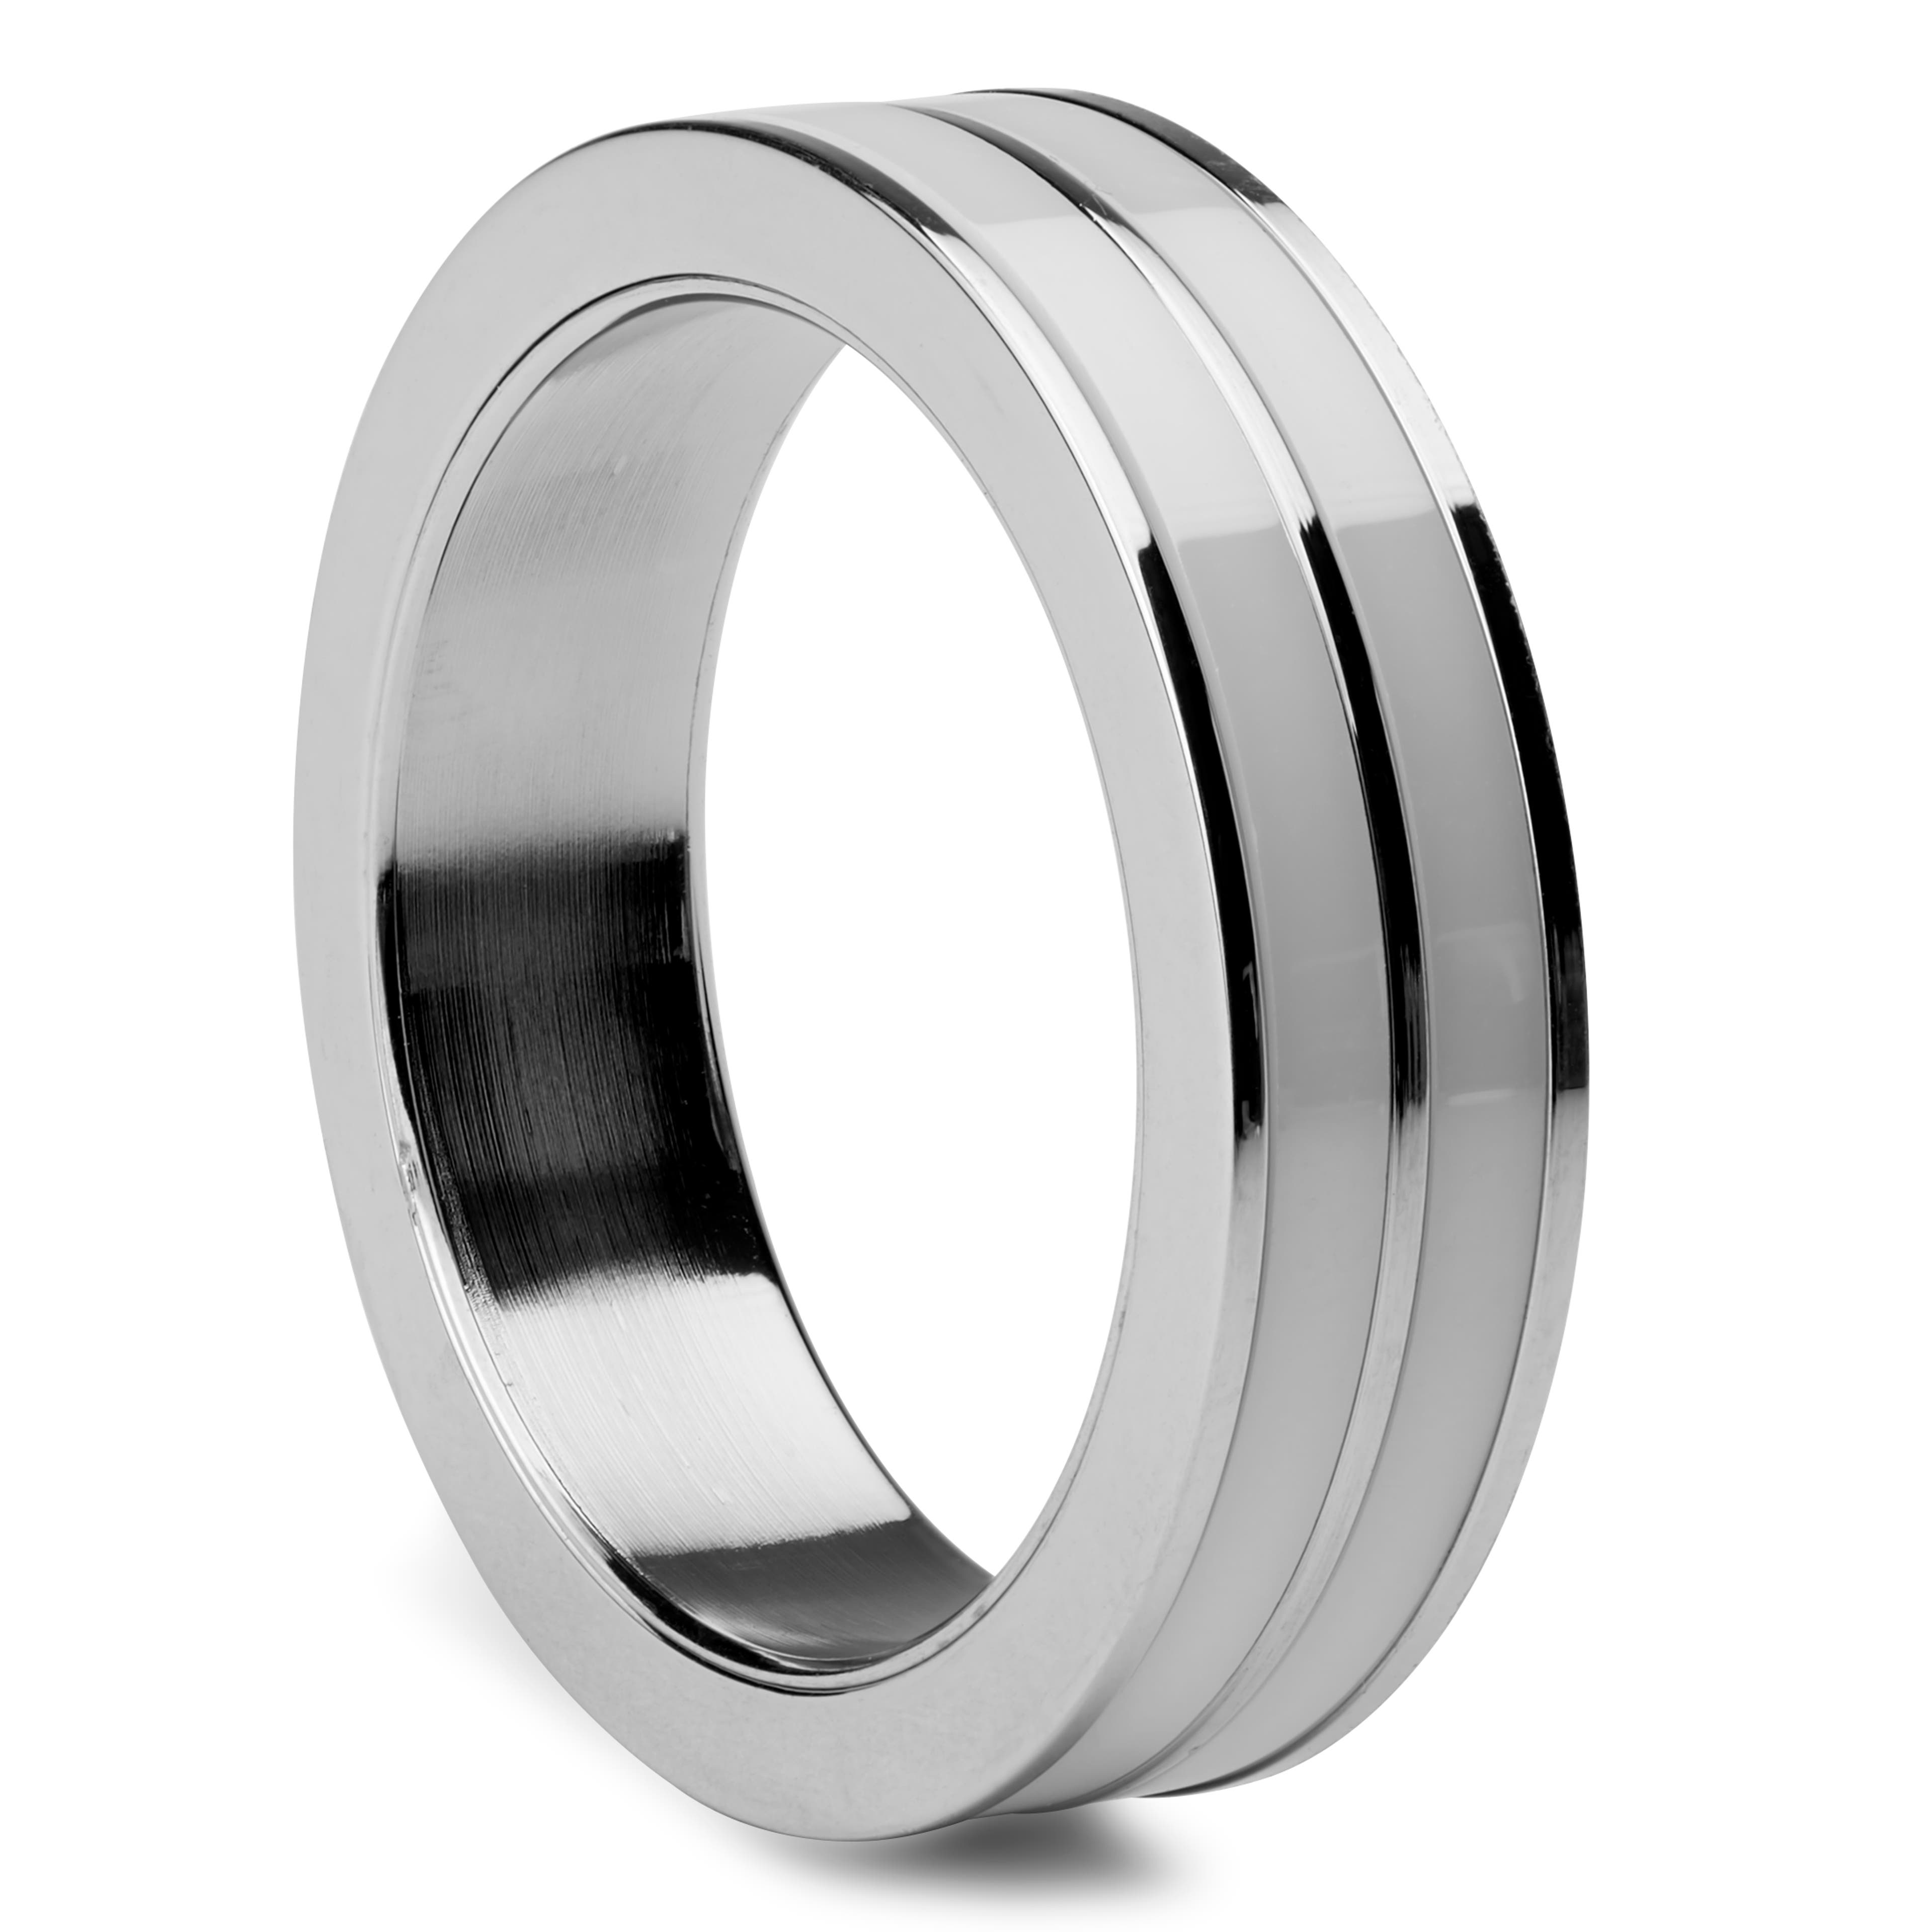 Ezüst-tónusú acélgyűrű kerámiagyűrűkkel